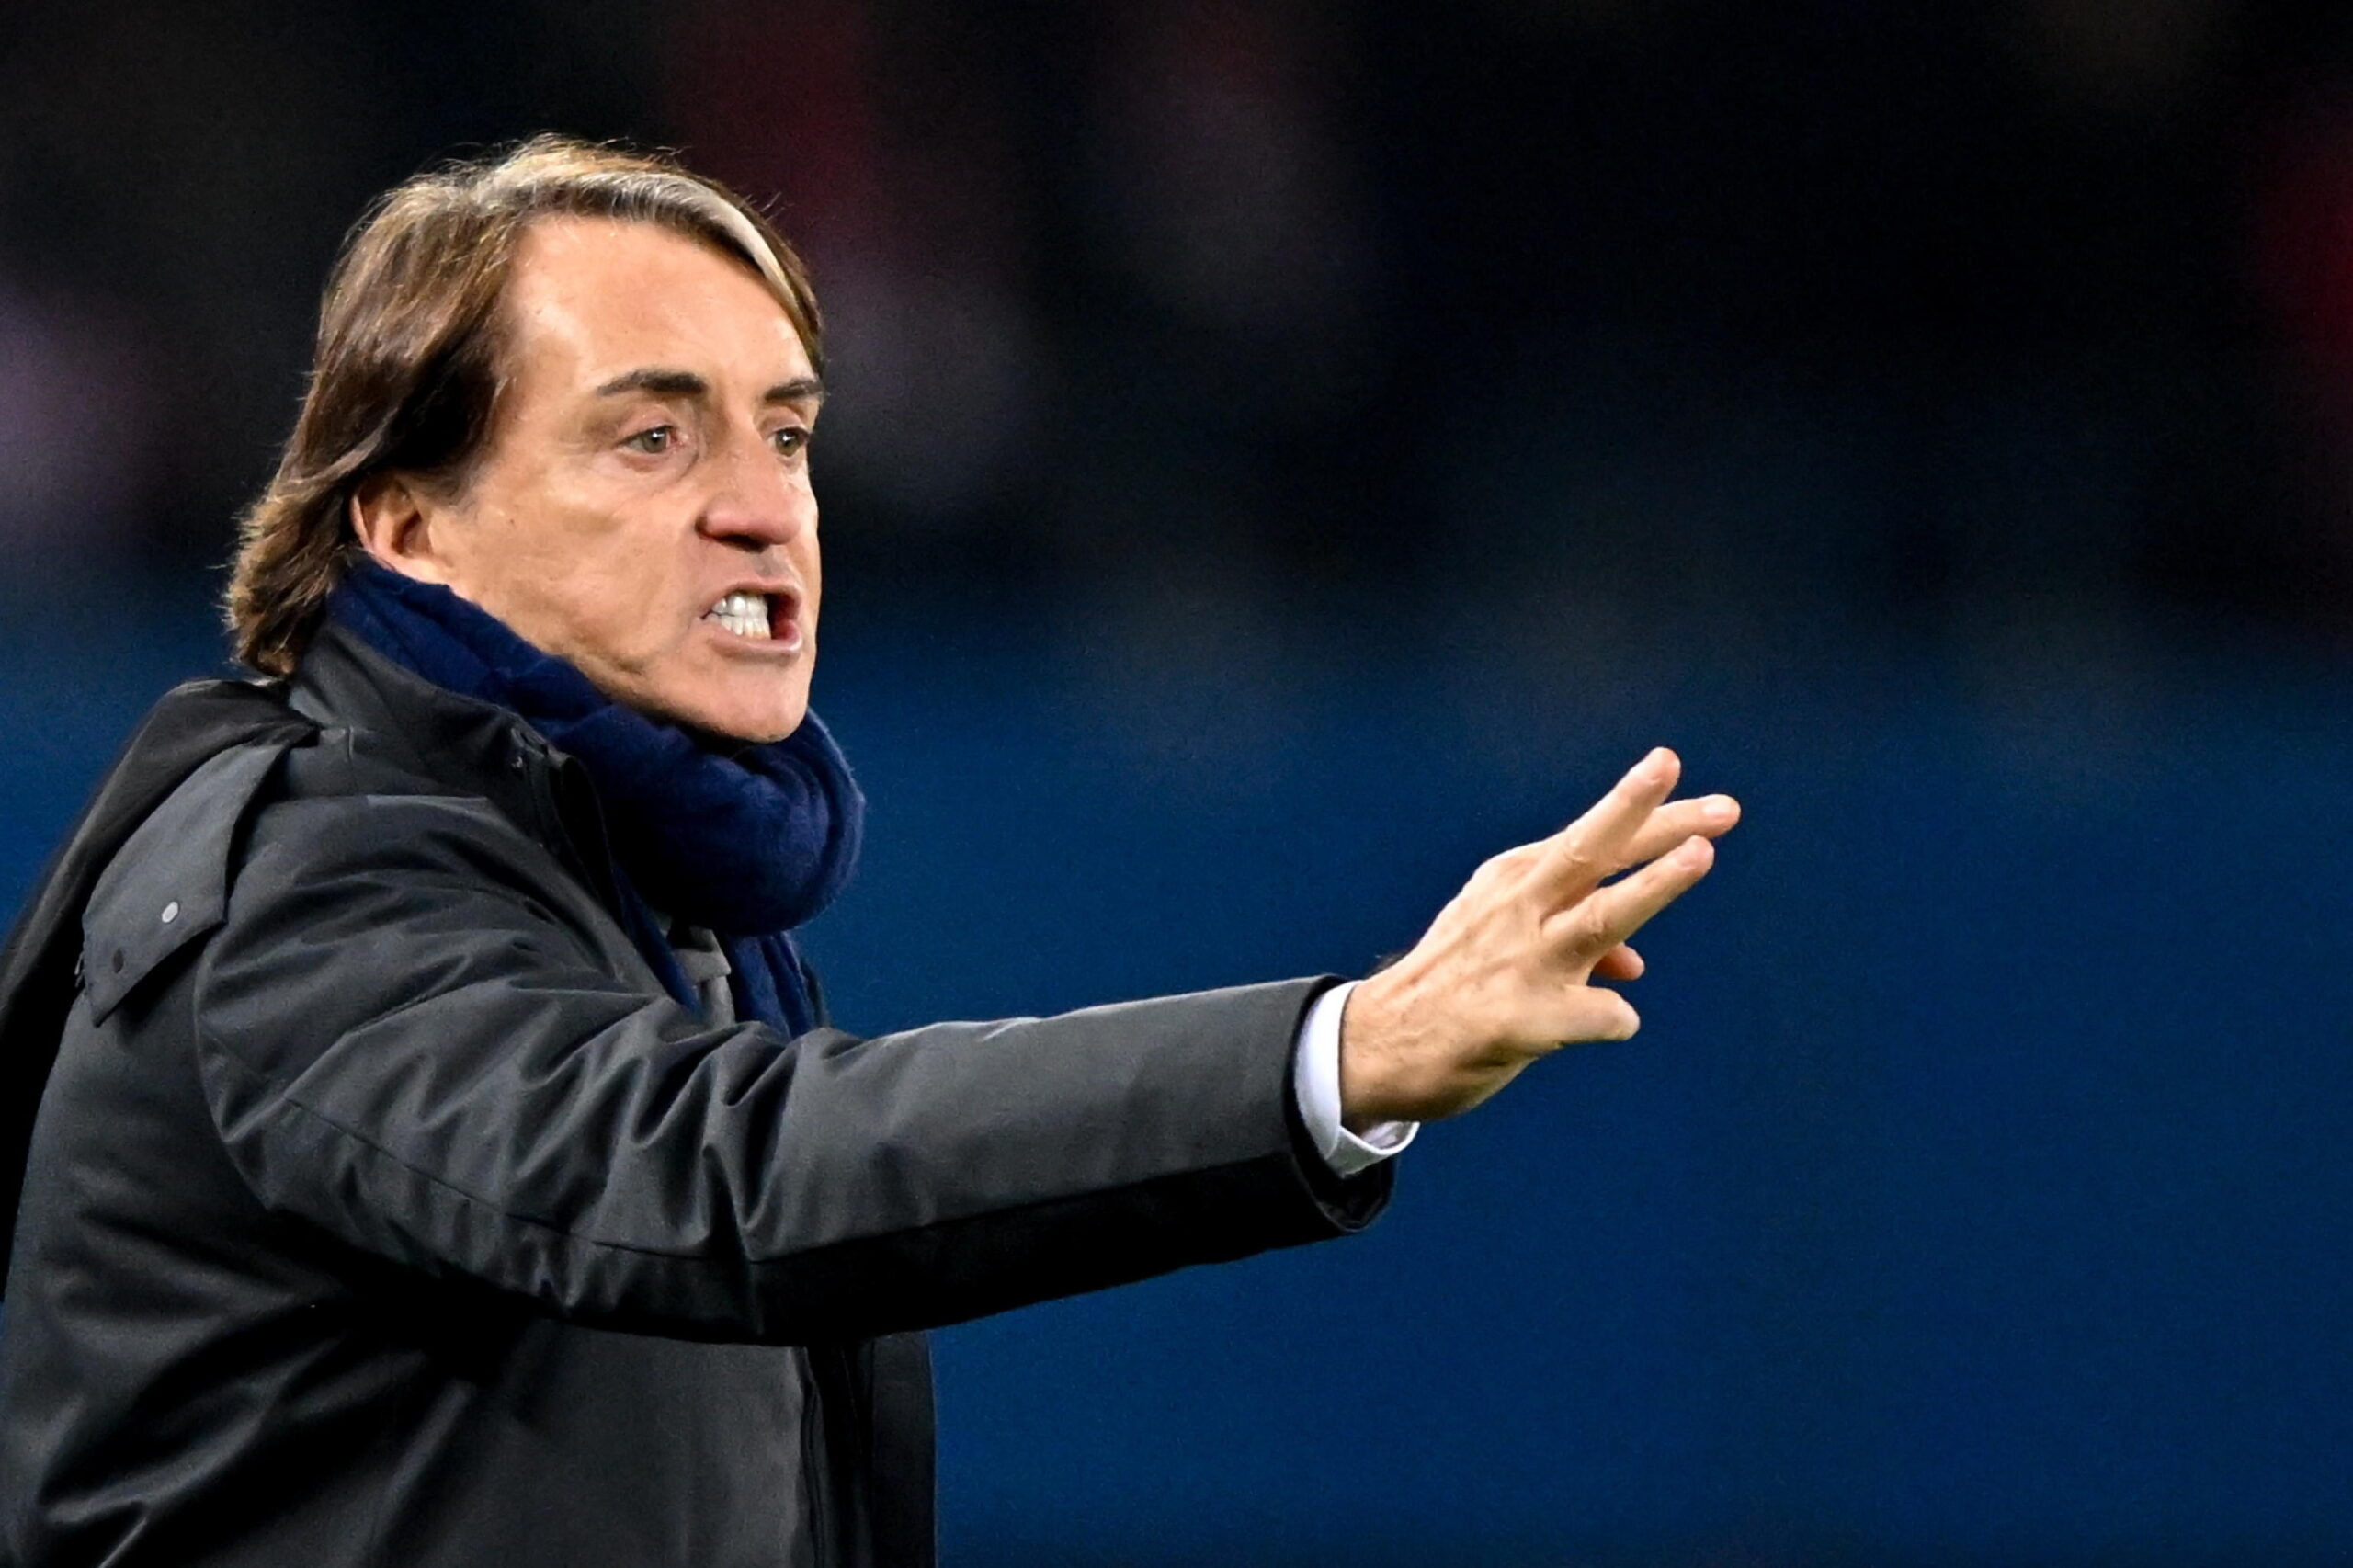 Italia Inghilterra, Mancini: “Meritavamo il pari. Nella ripresa ho visto una grande Nazionale”